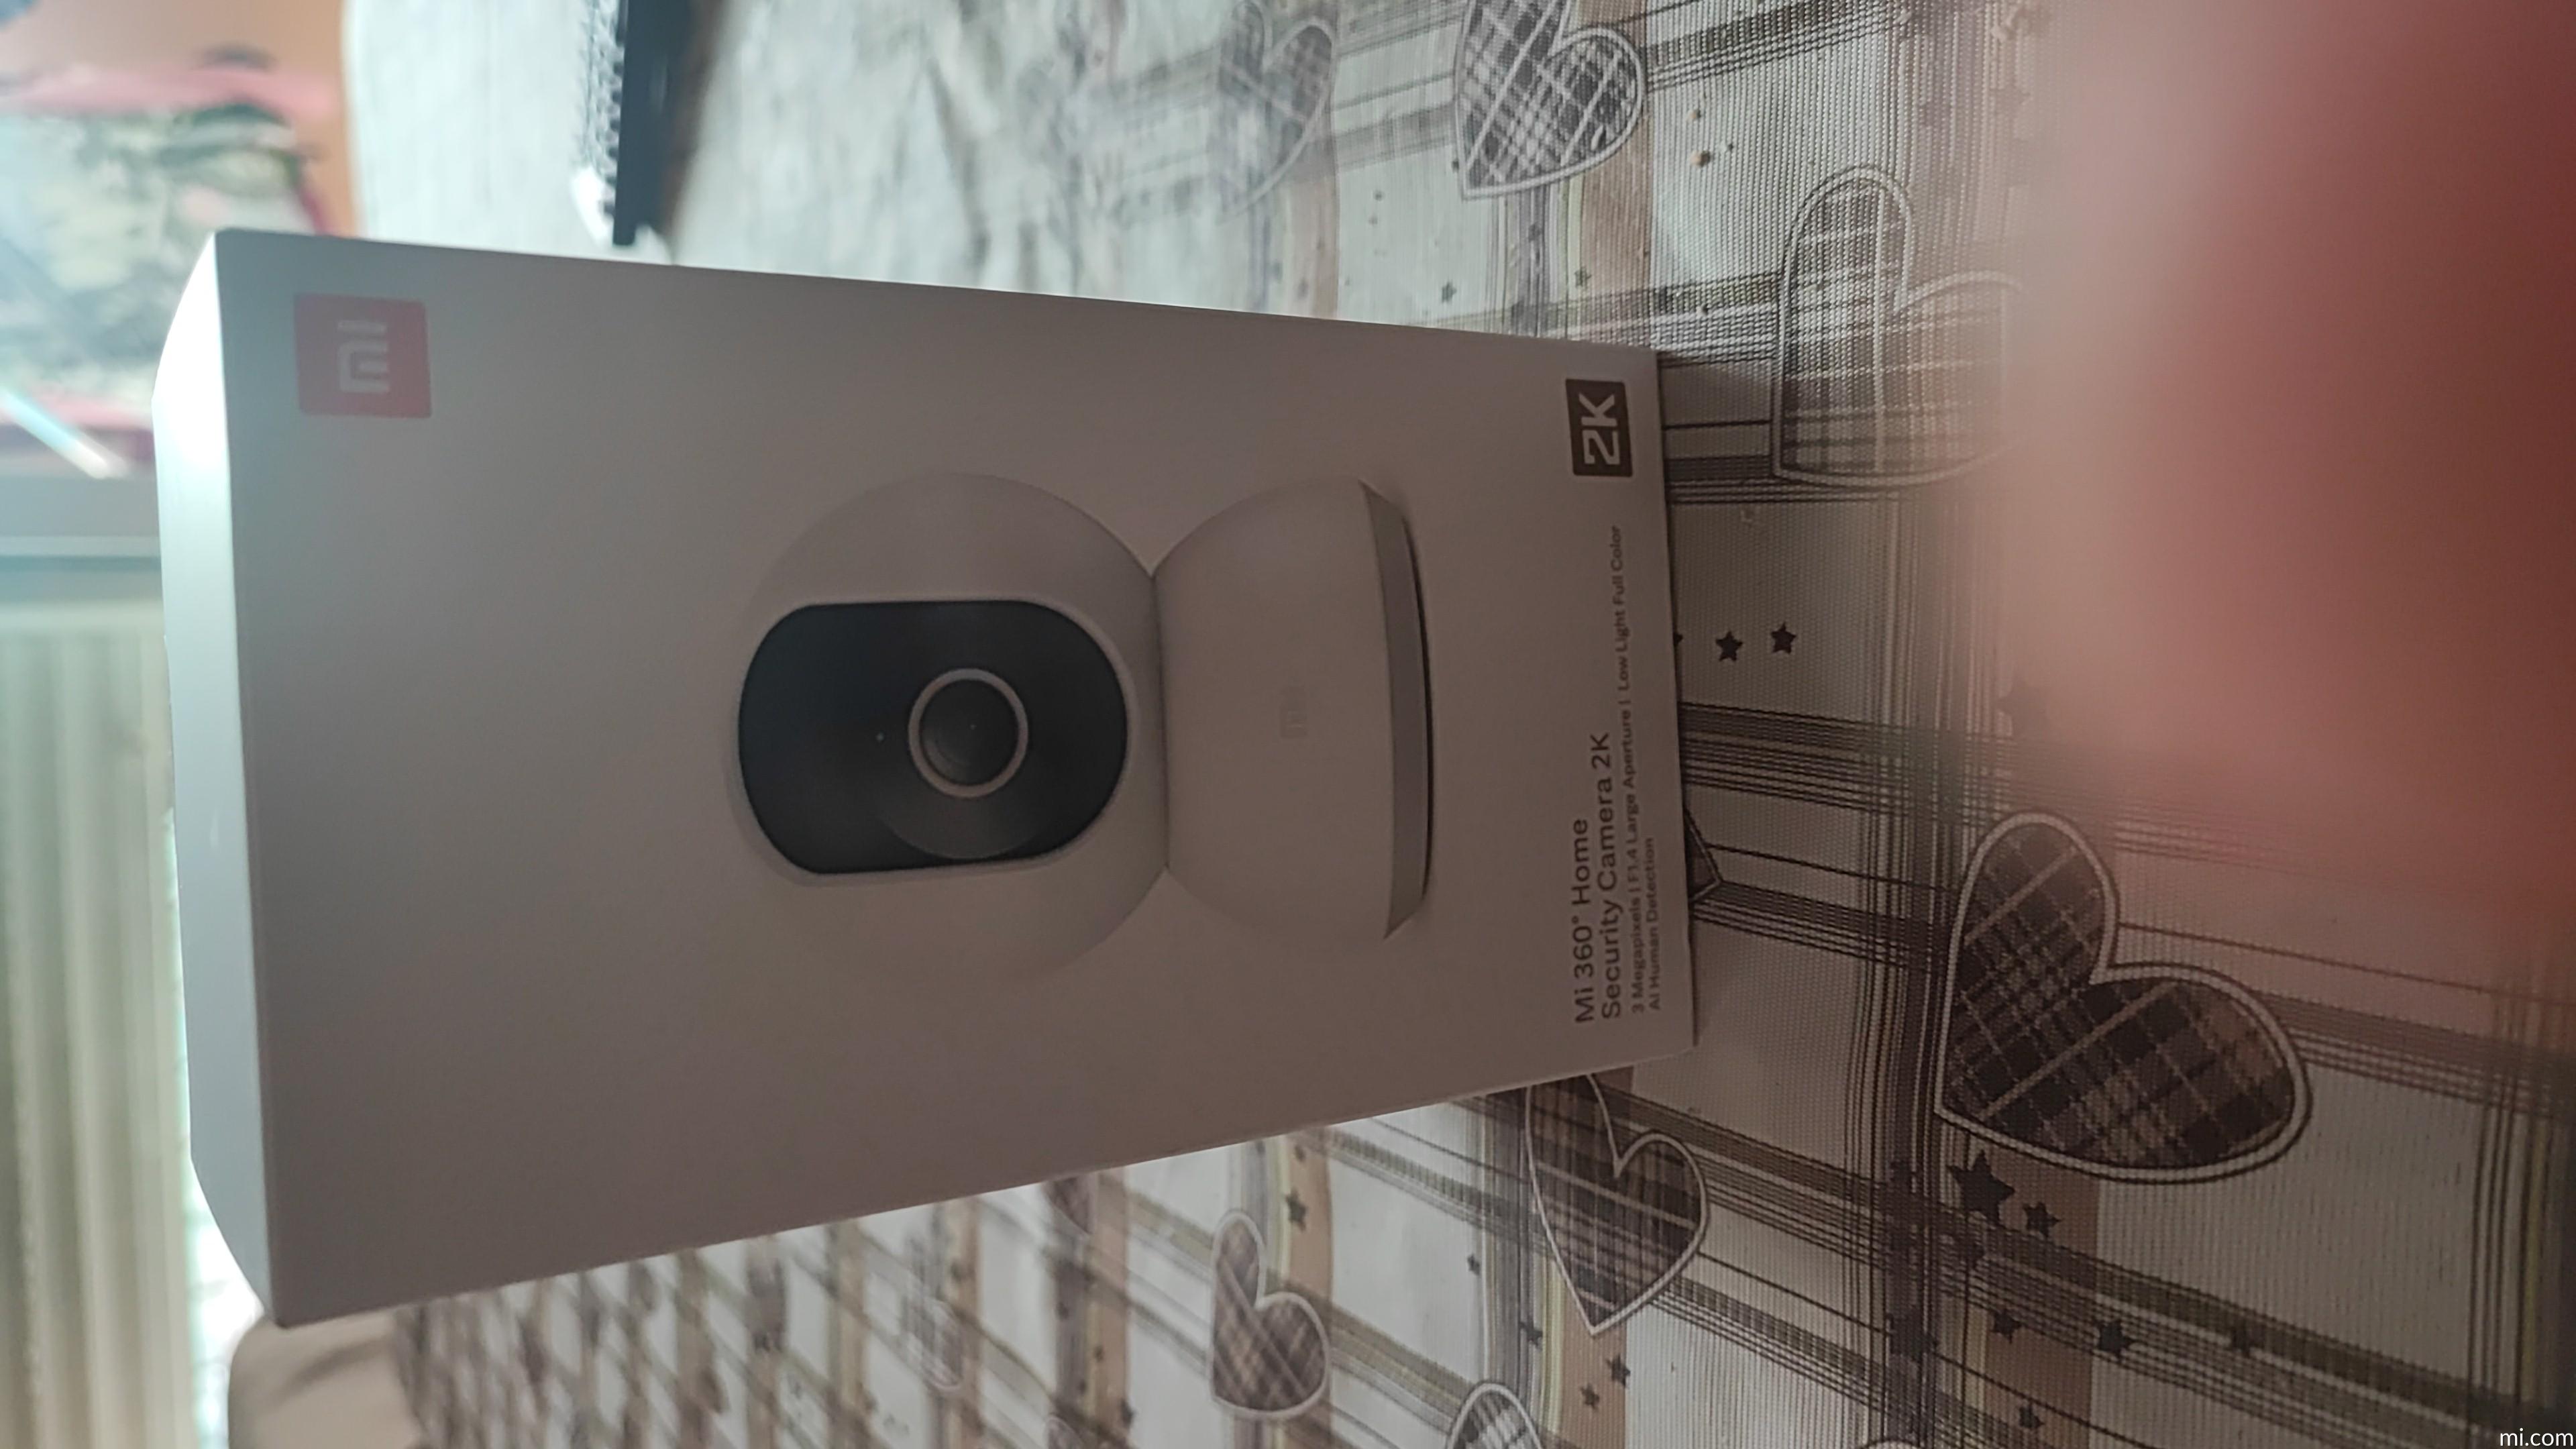 Camara Xiaomi Mi 360° Home Security Camera 2k Color Blanco